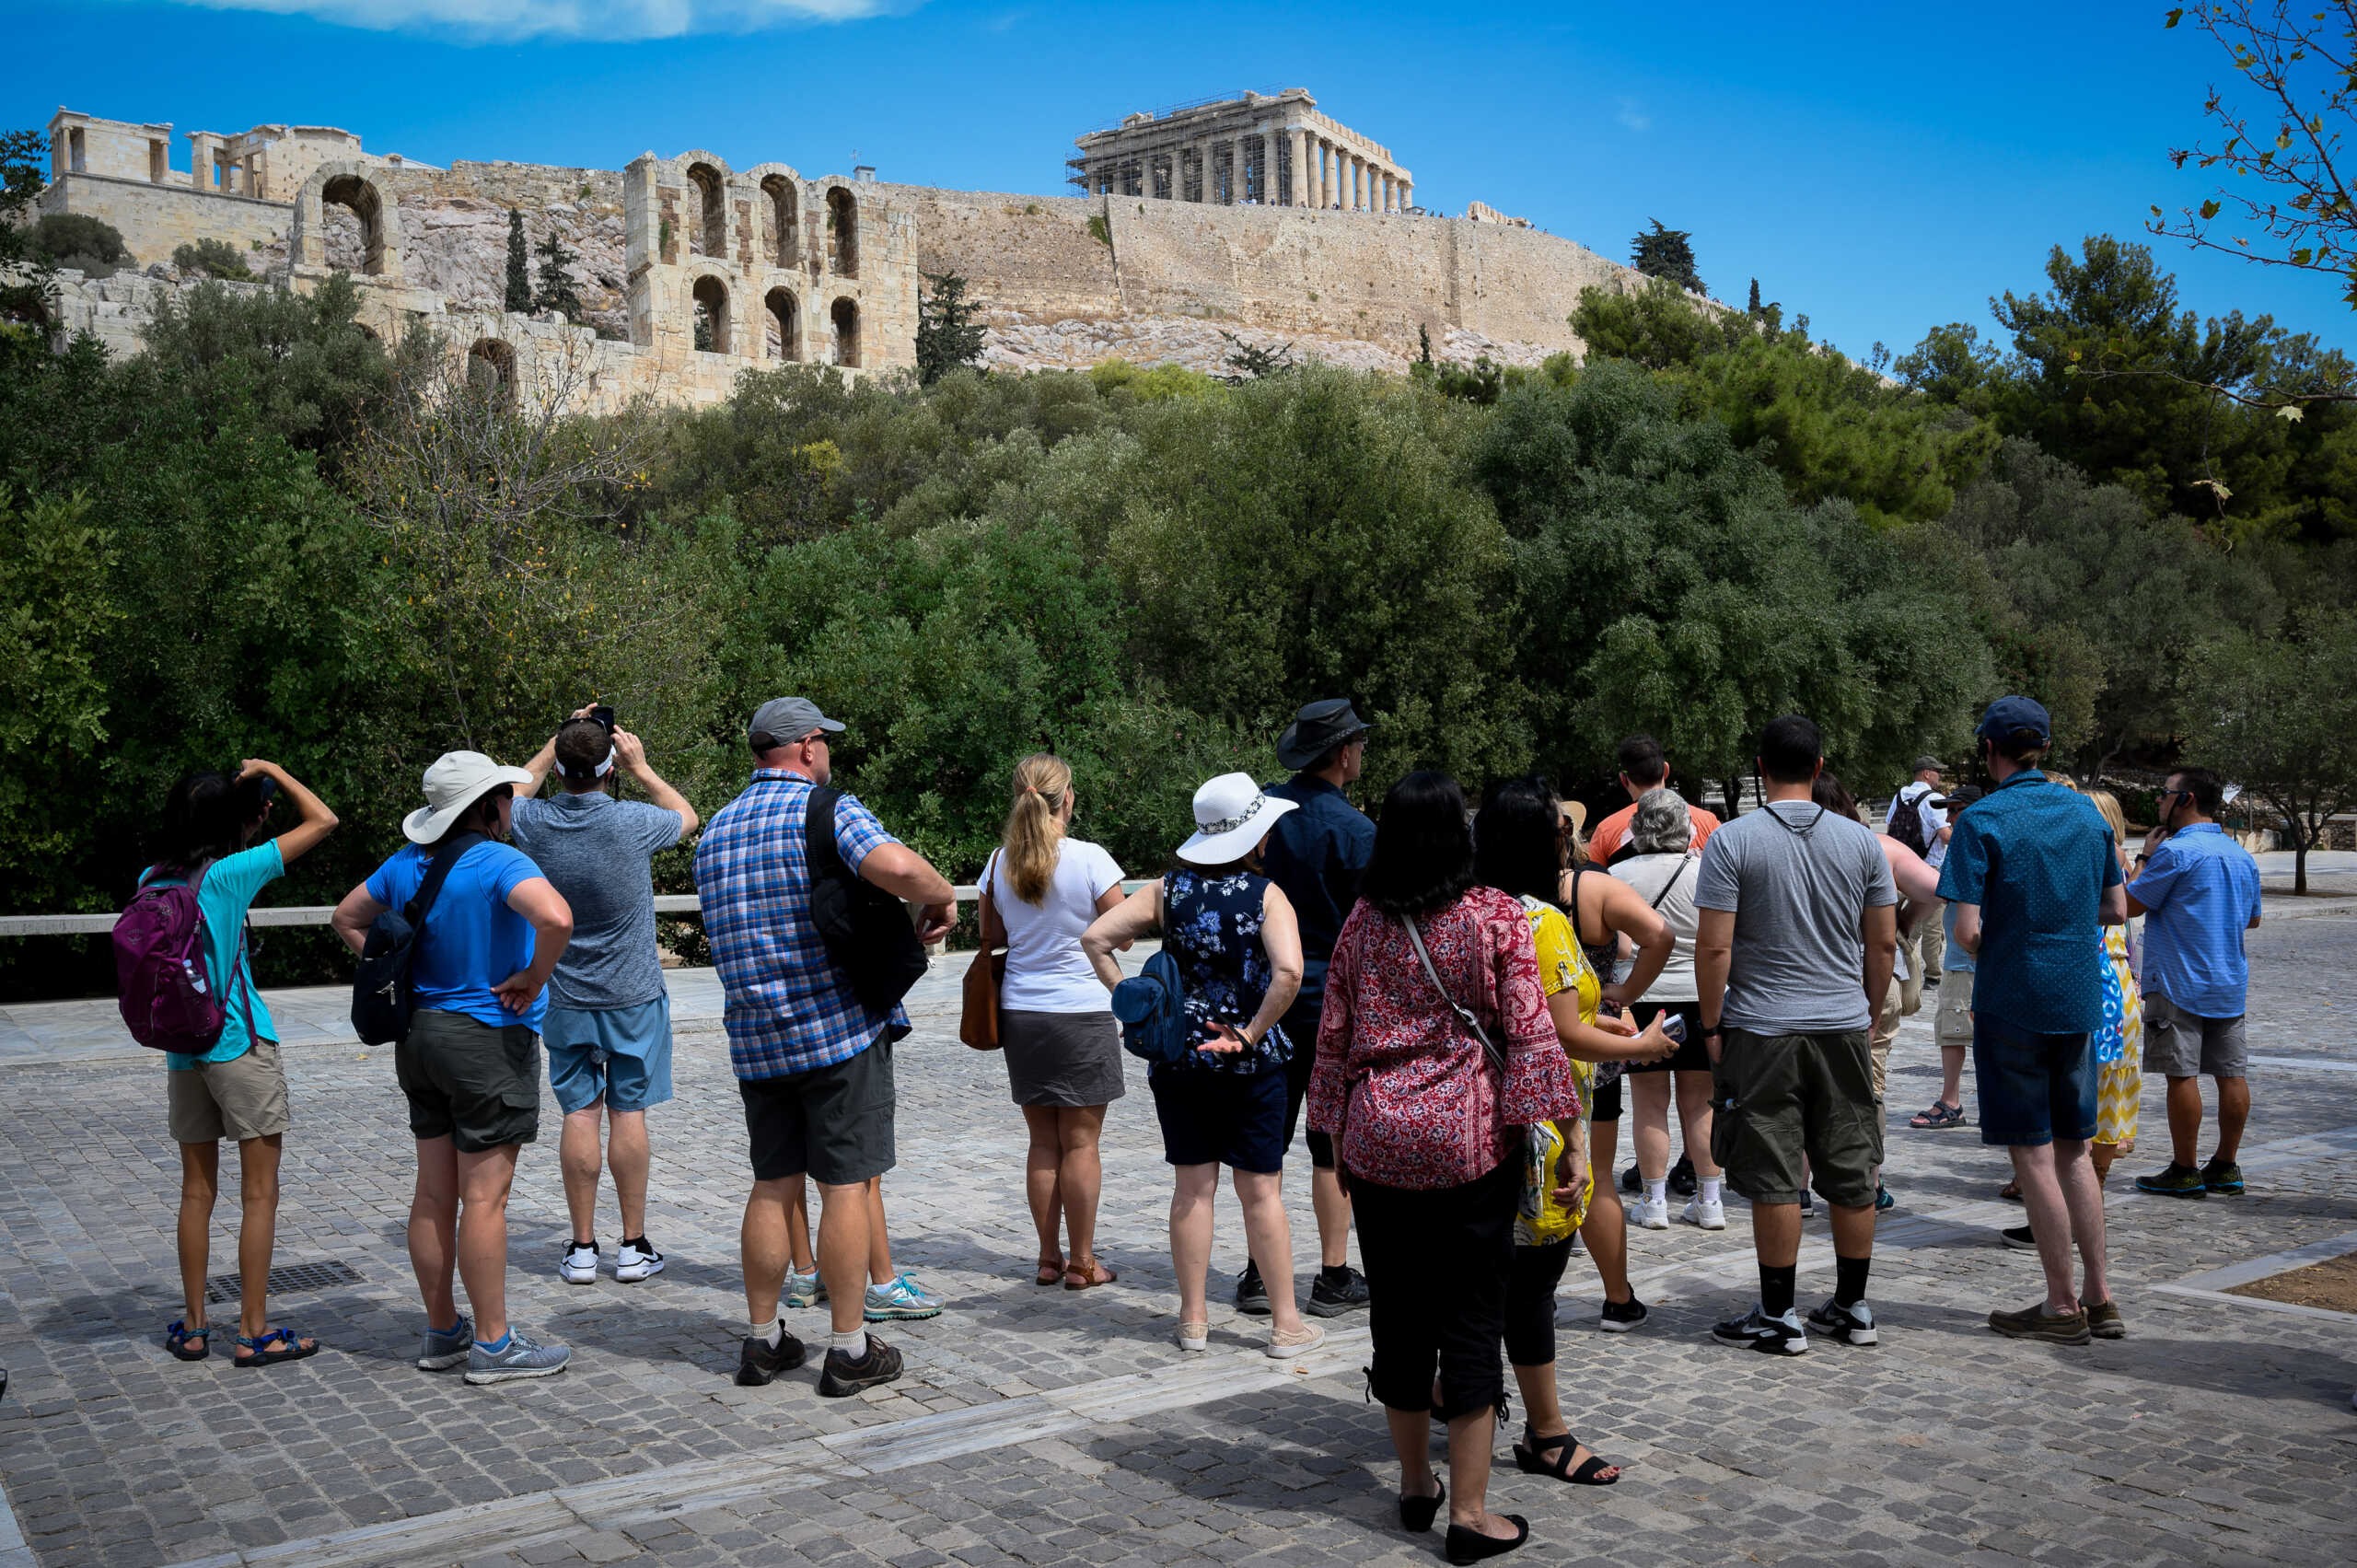 Έρευνα ΙΝΣΕΤΕ – Τουρισμός: Πρωταγωνιστής η Ελλάδα στους δημοφιλείς προορισμούς για τις μεγάλες ευρωπαϊκές αγορές